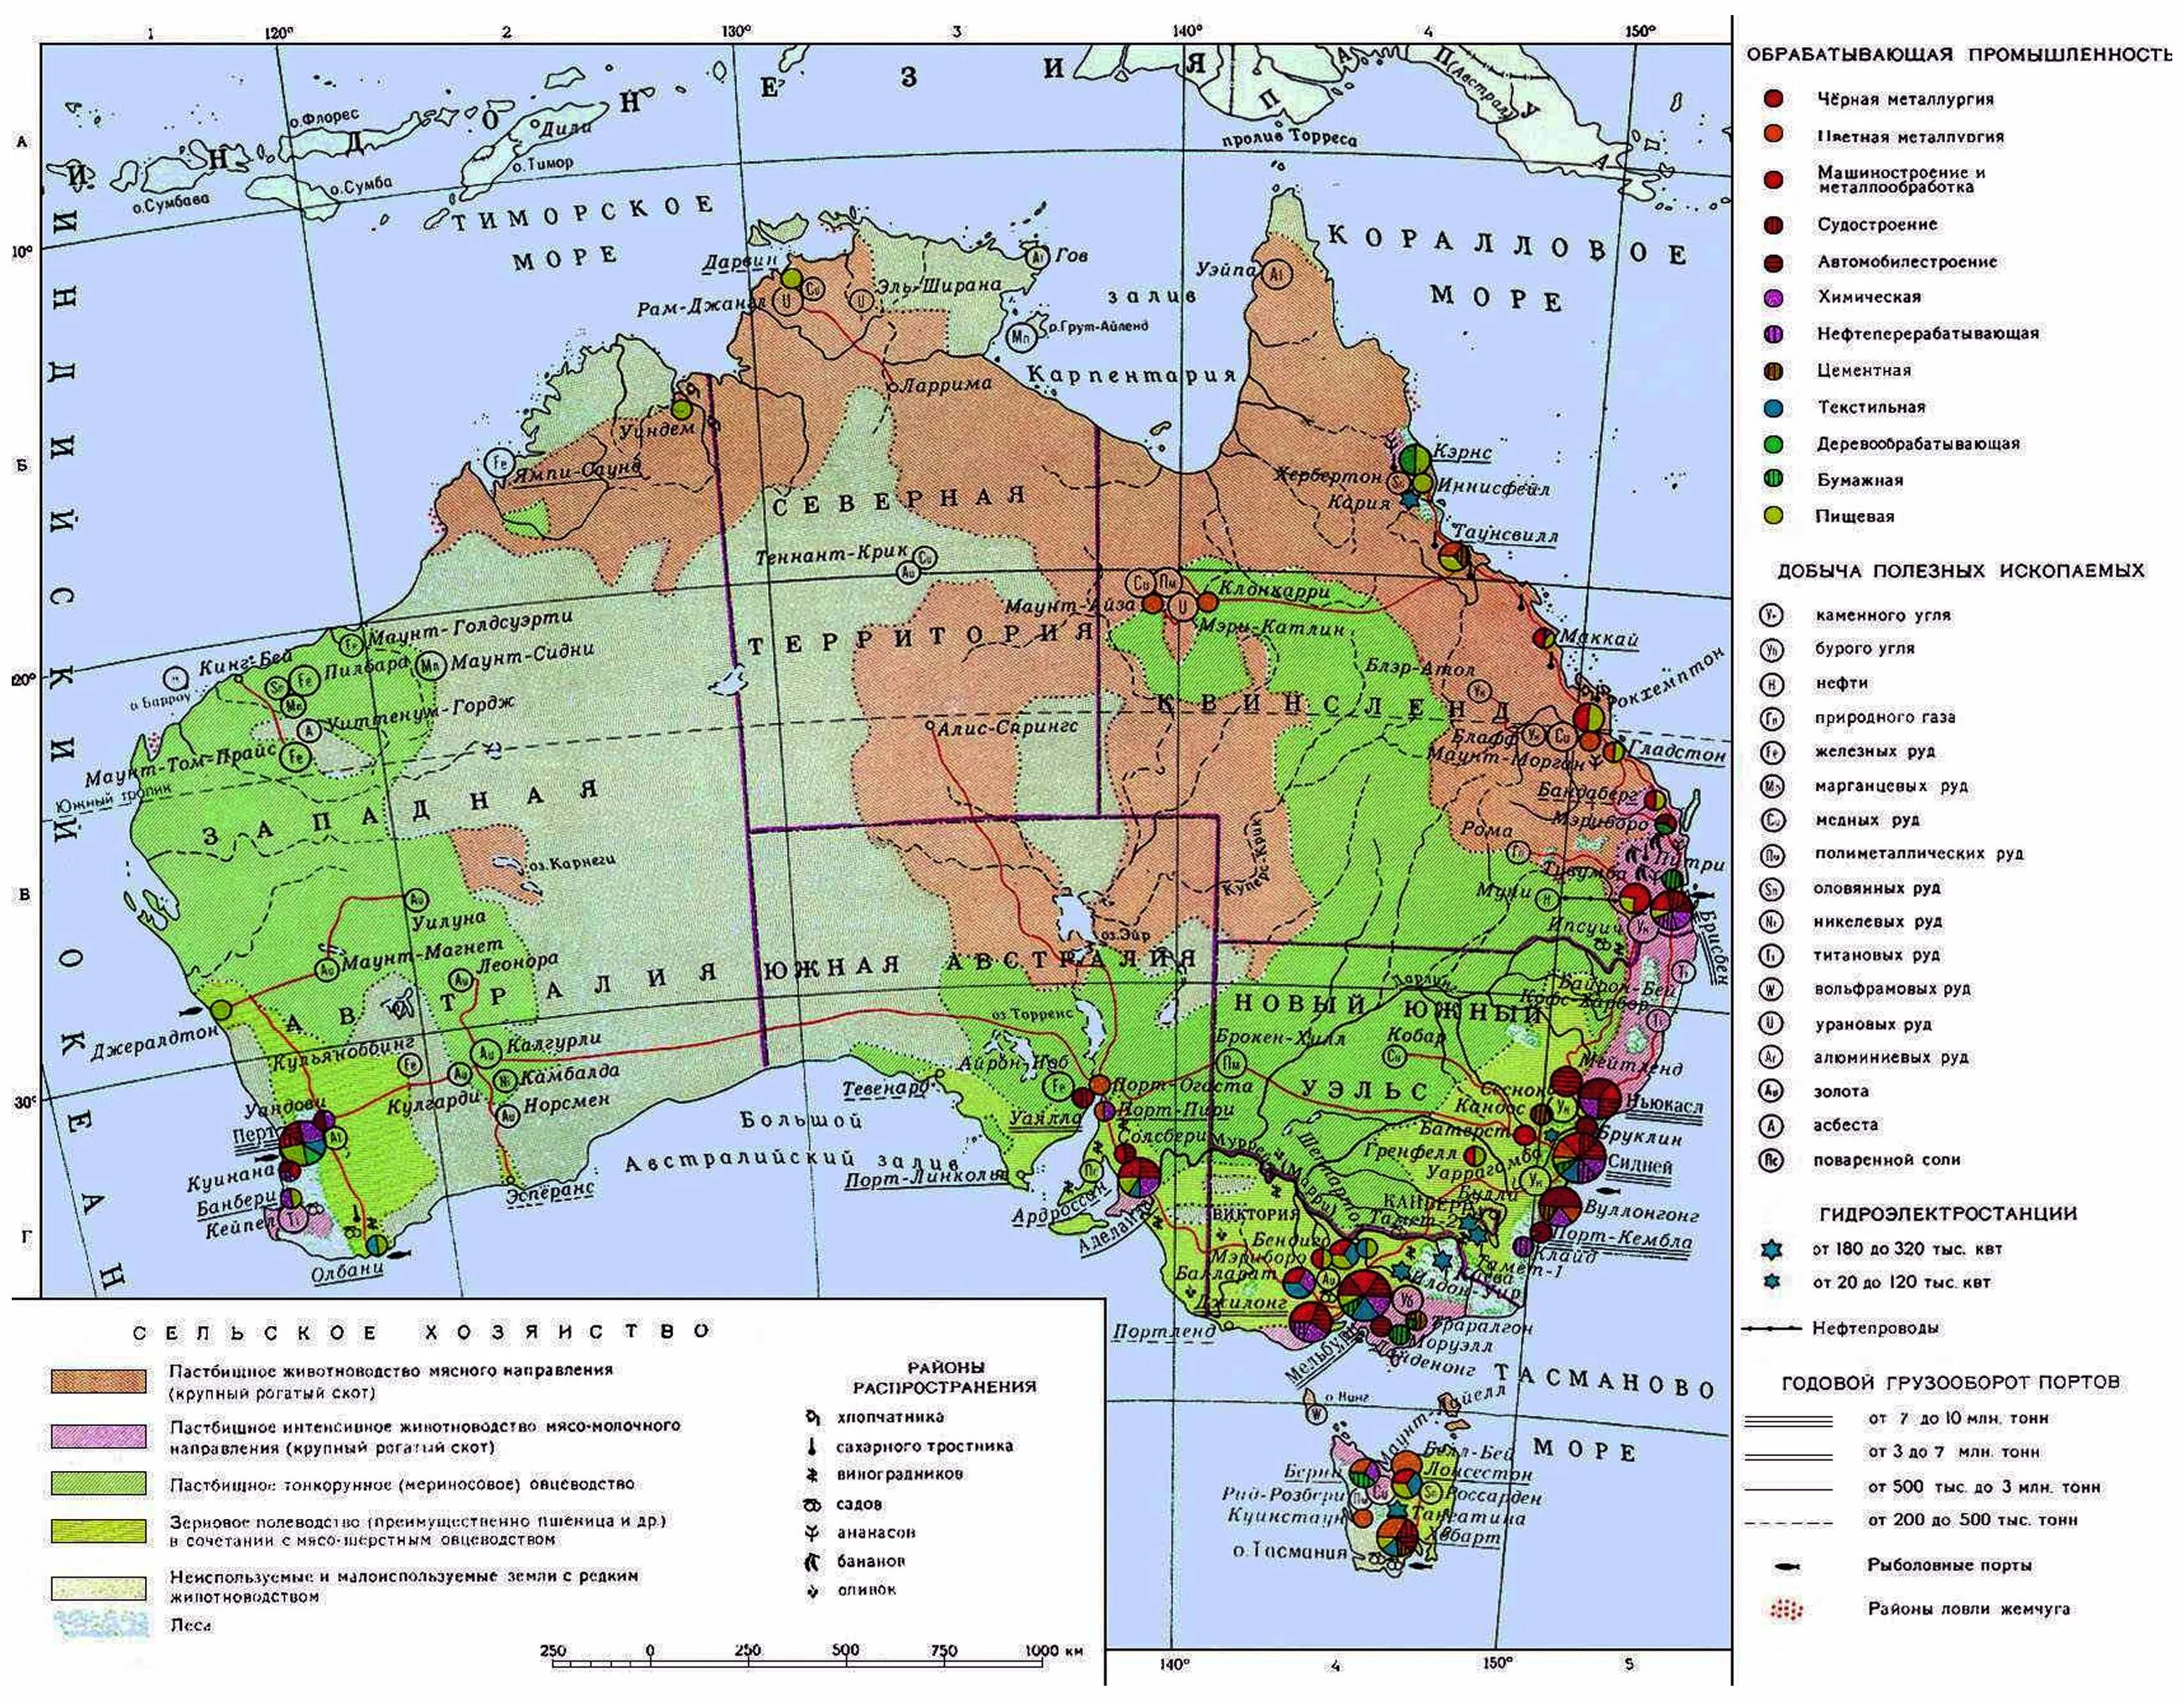 Подпишите крупнейшие города австралии. Экономическая карта Австралии. Крупные экономические центры Австралии контурная карта. Население и хозяйство Австралии карта. Австралийский Союз на карте Австралии.